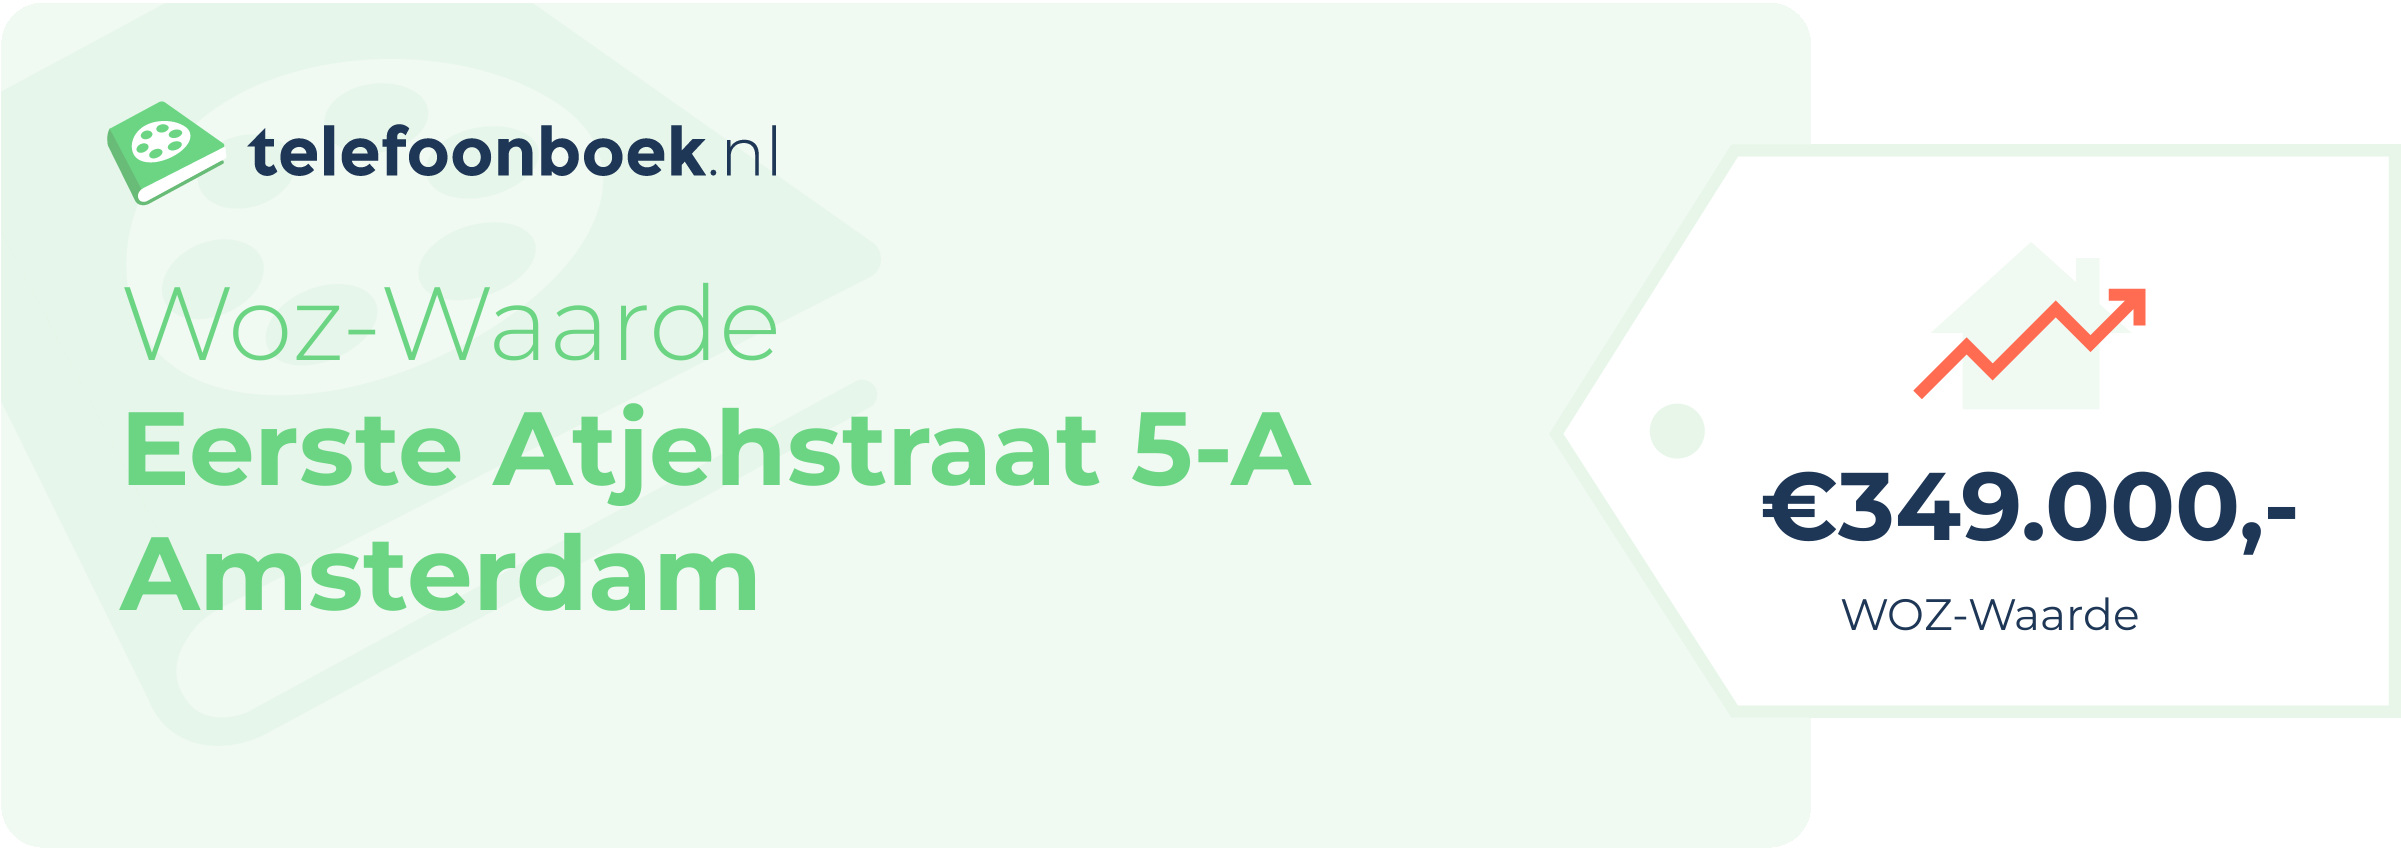 WOZ-waarde Eerste Atjehstraat 5-A Amsterdam